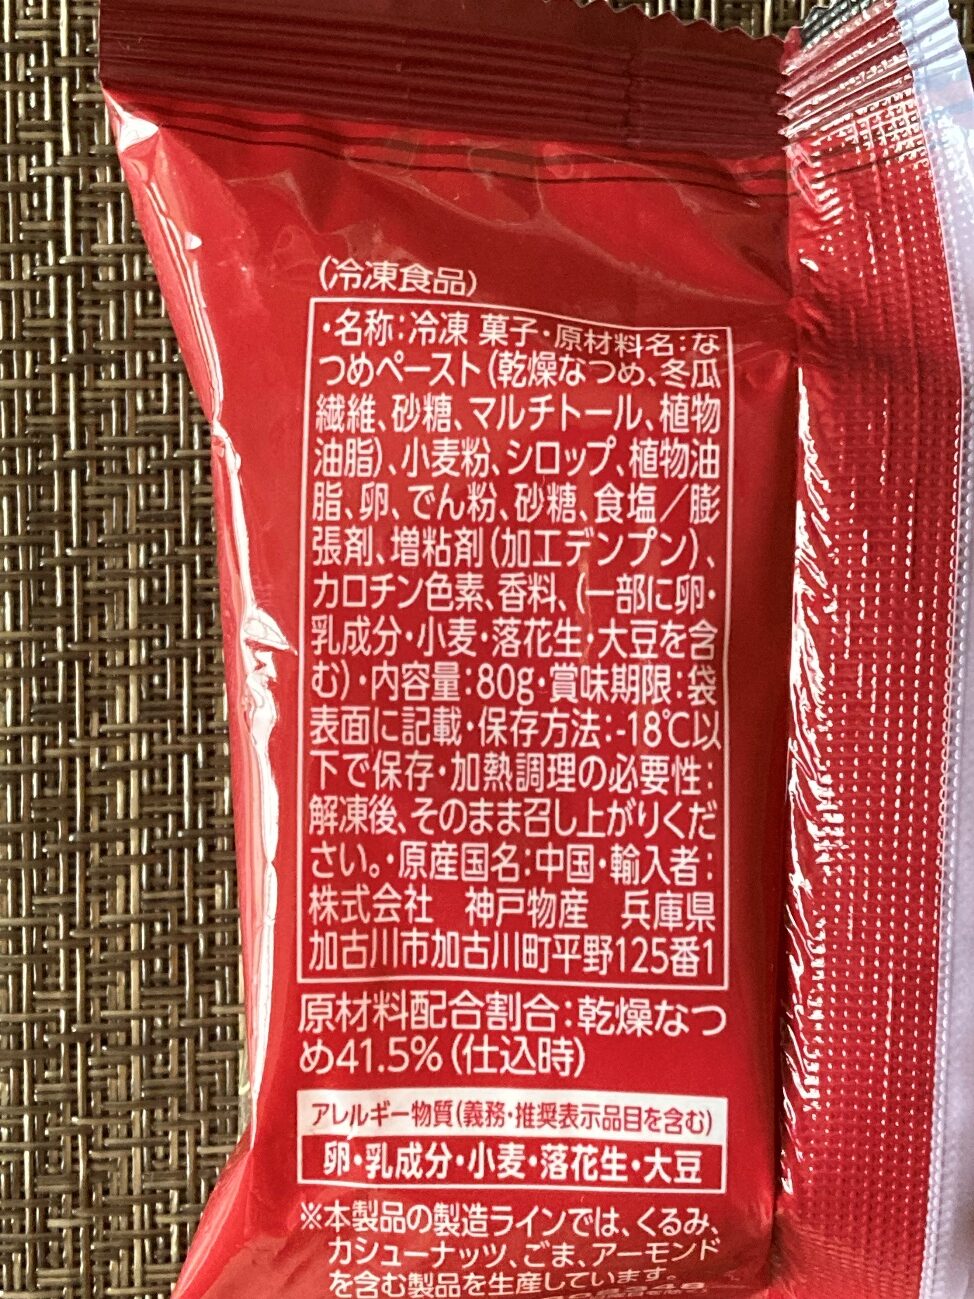 業務スーパーの棗月餅の原材料名と原産国名の表記